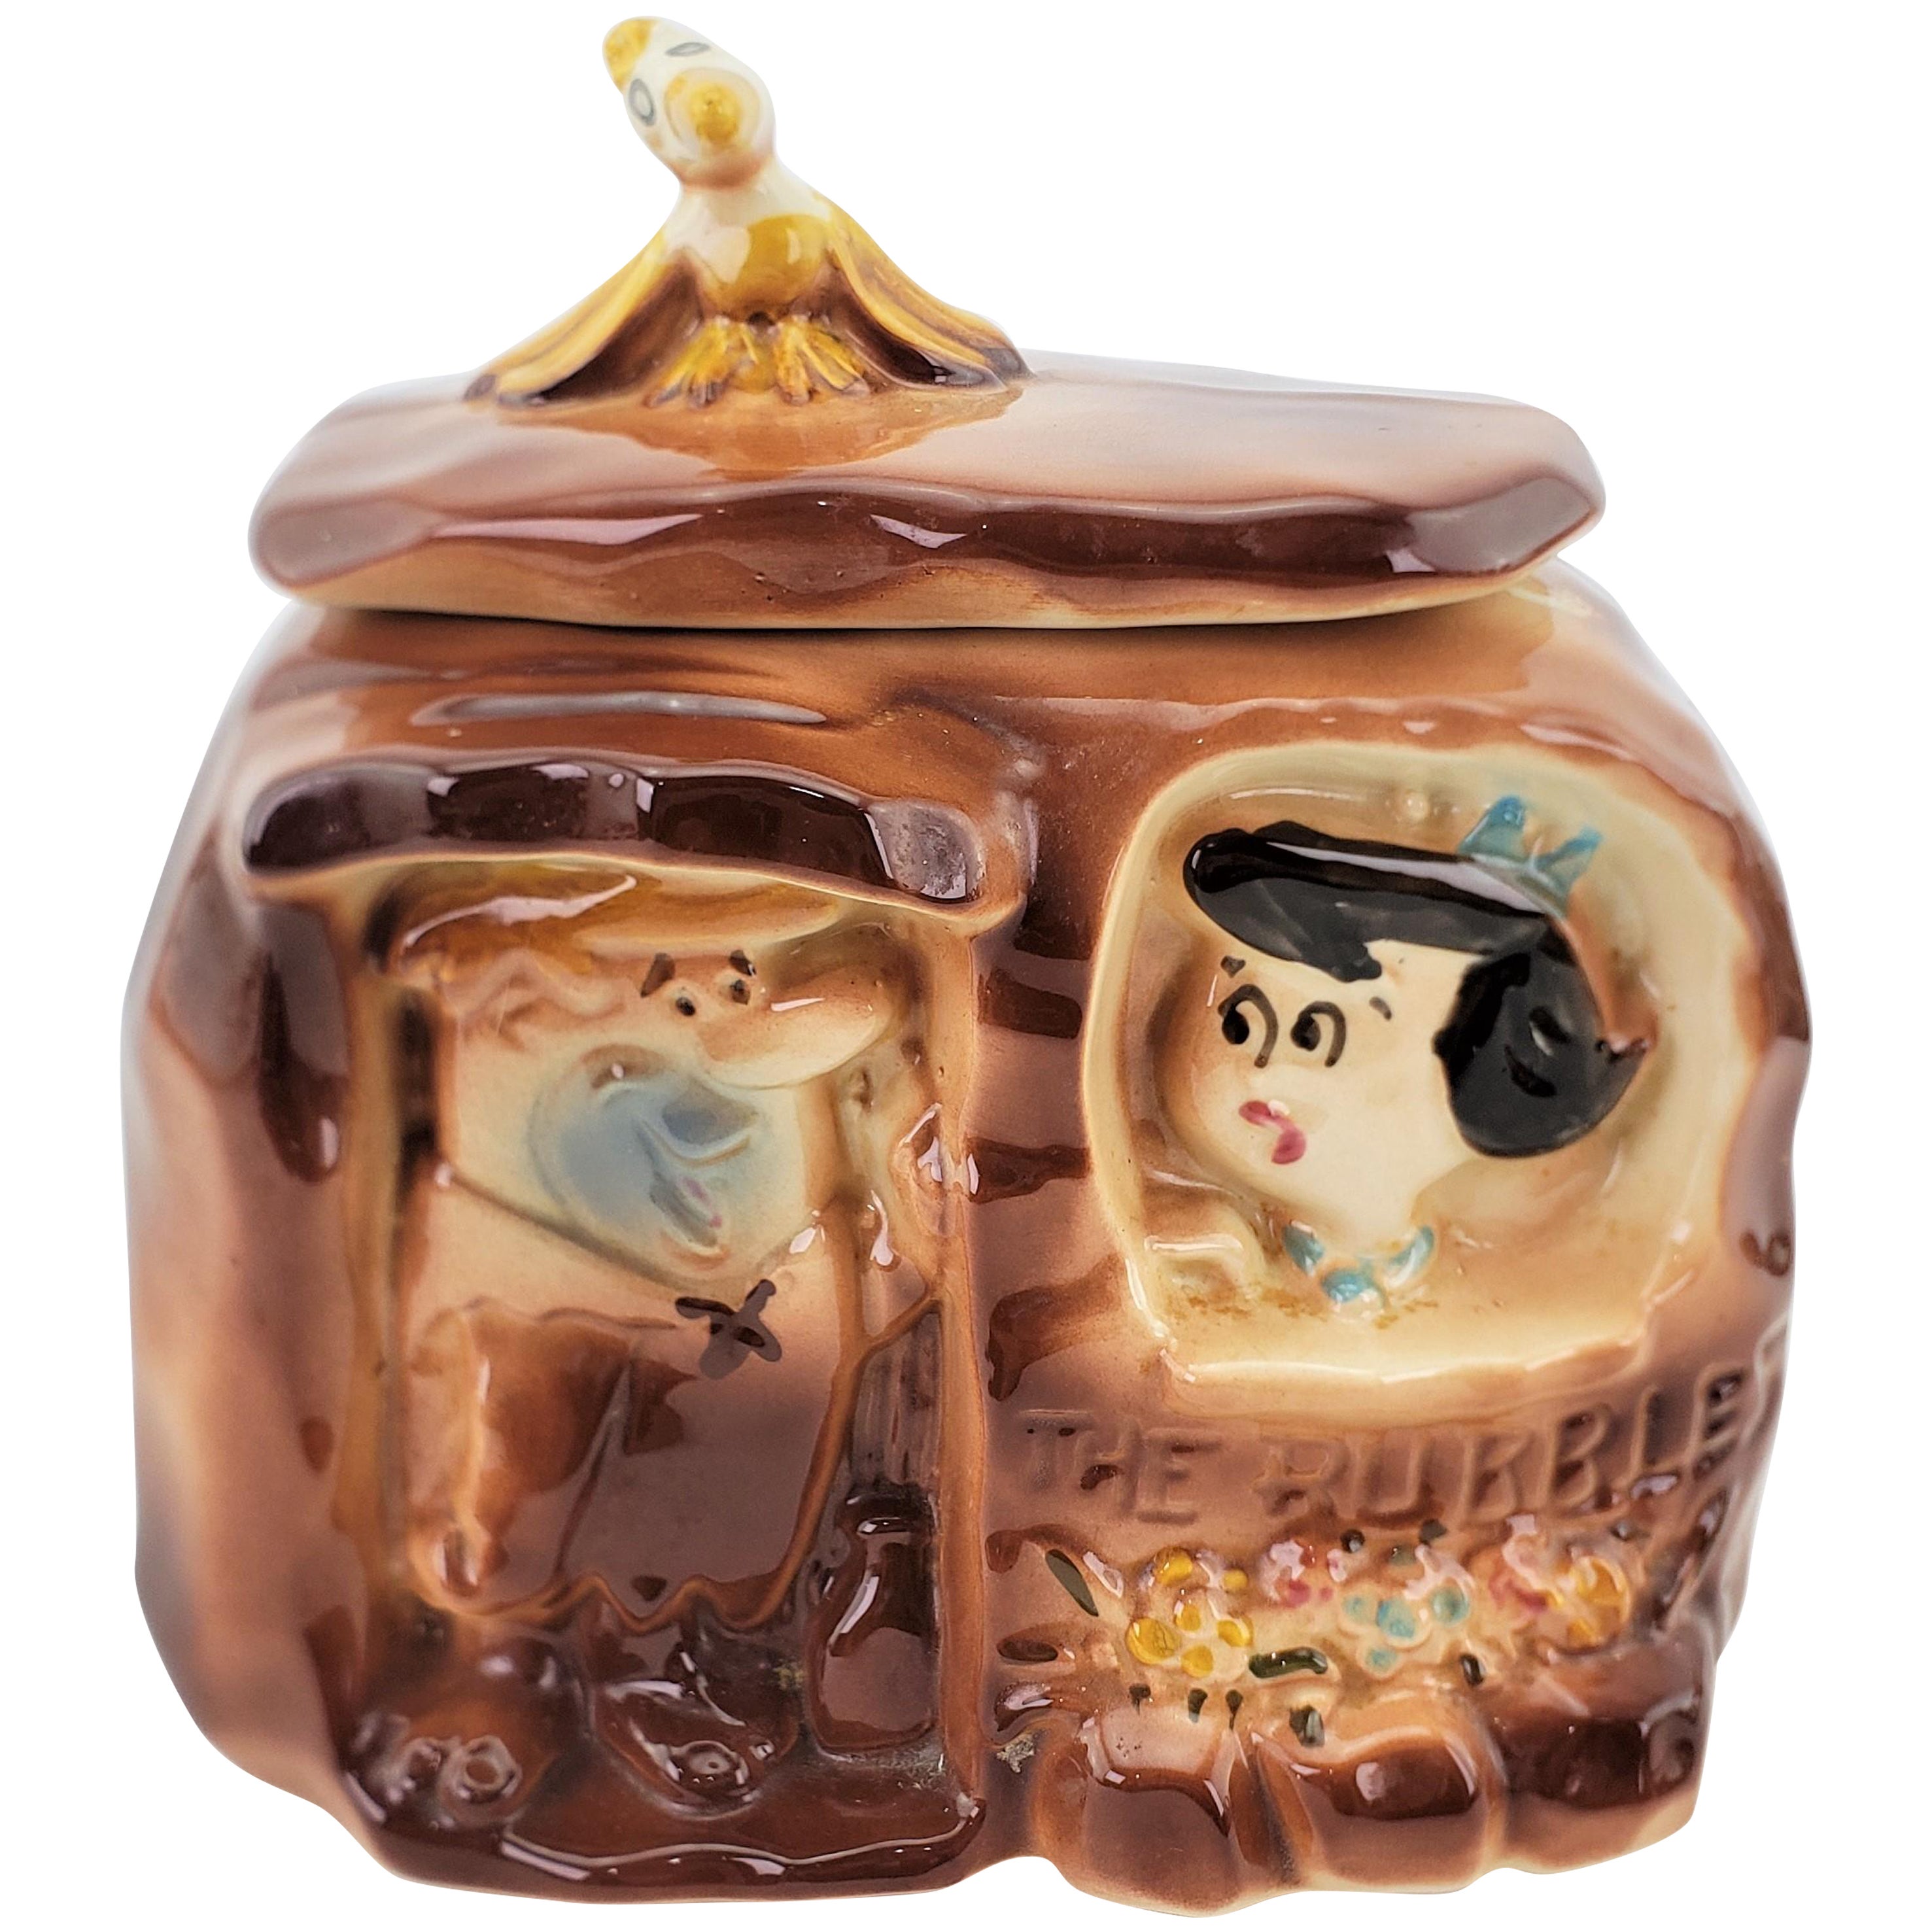 Barney & Betty Gummigefäß aus Keramik „The Flintstones“ aus der Mitte des Jahrhunderts